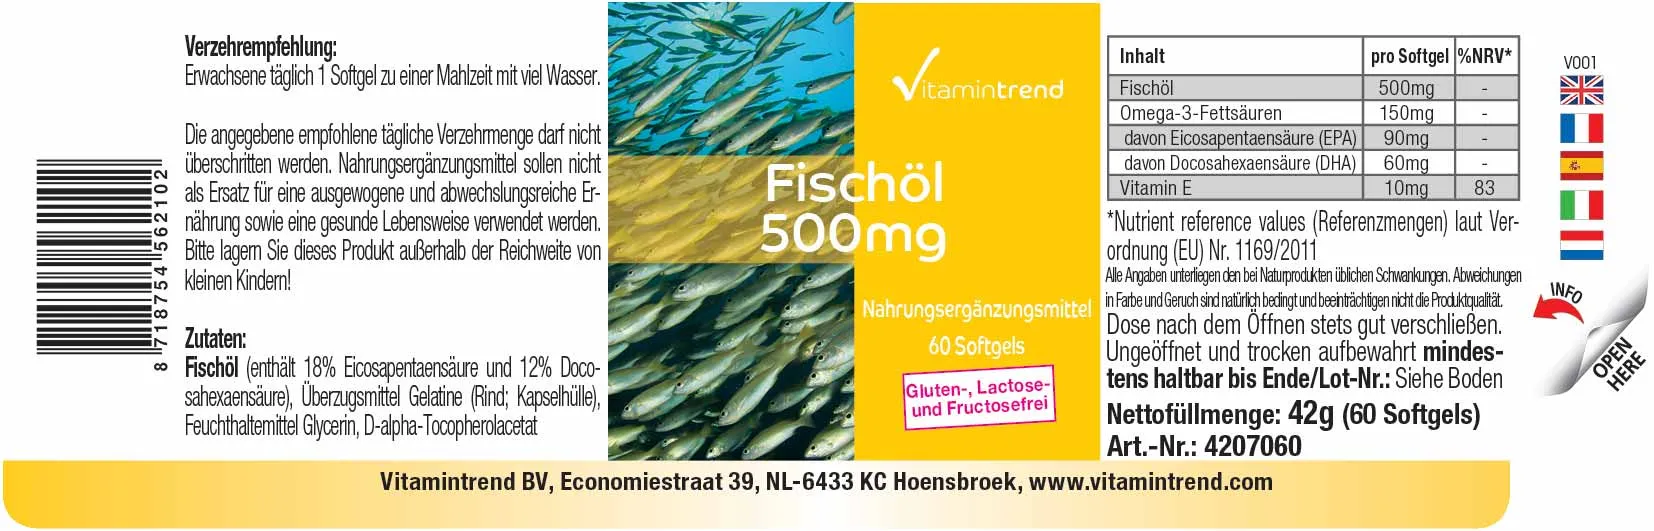 fischoel-500mg-4207060-de